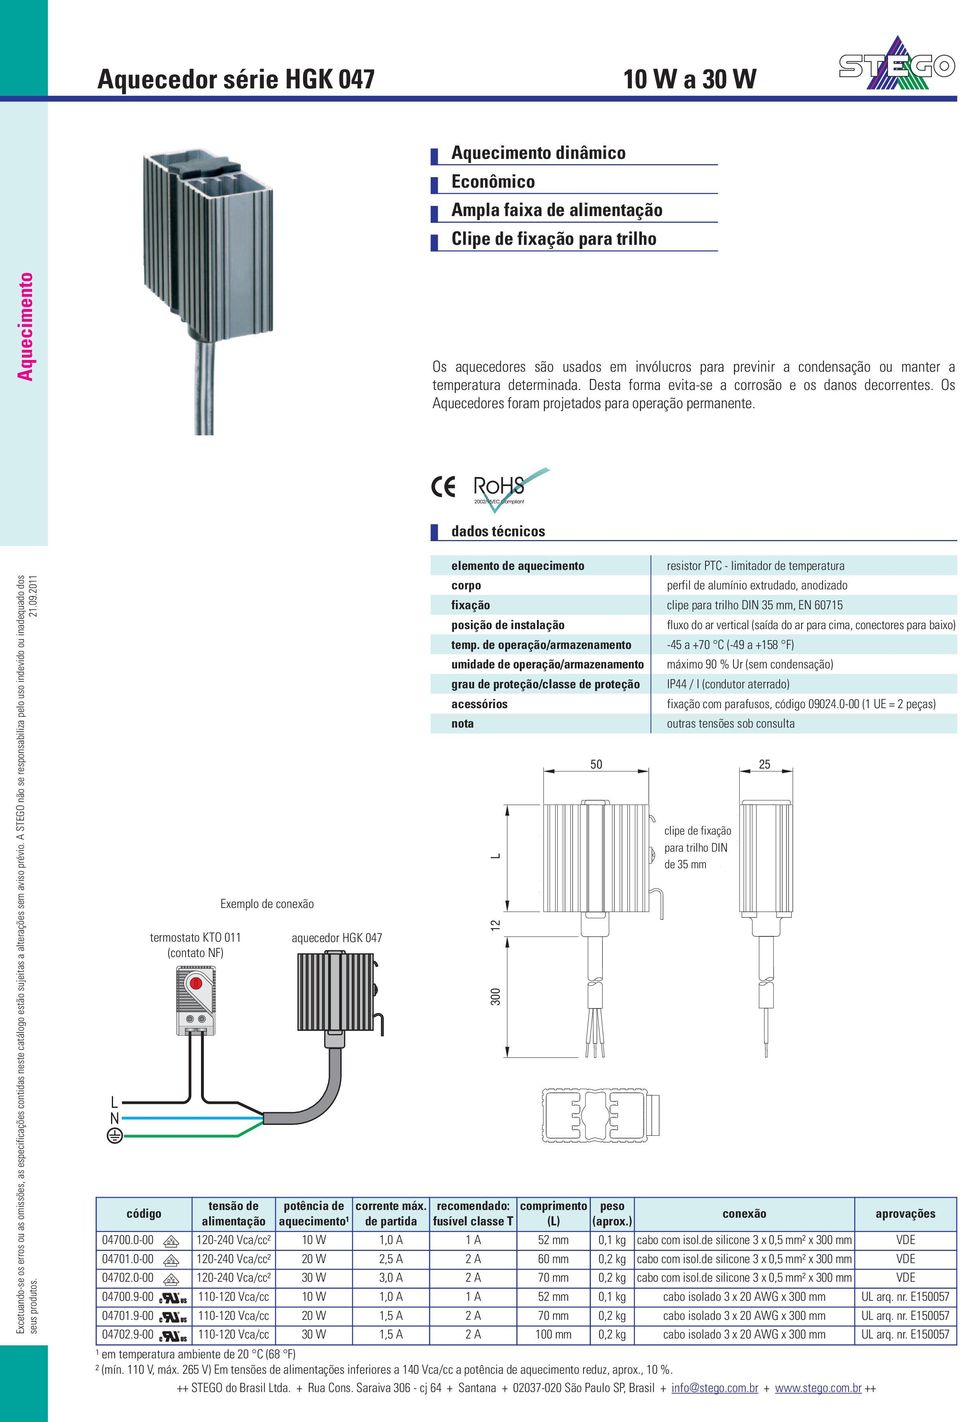 L N código termostato KTO 011 (contato NF) Exemplo de tensão de alimentação aquecedor HGK 047 potência de corrente máx.